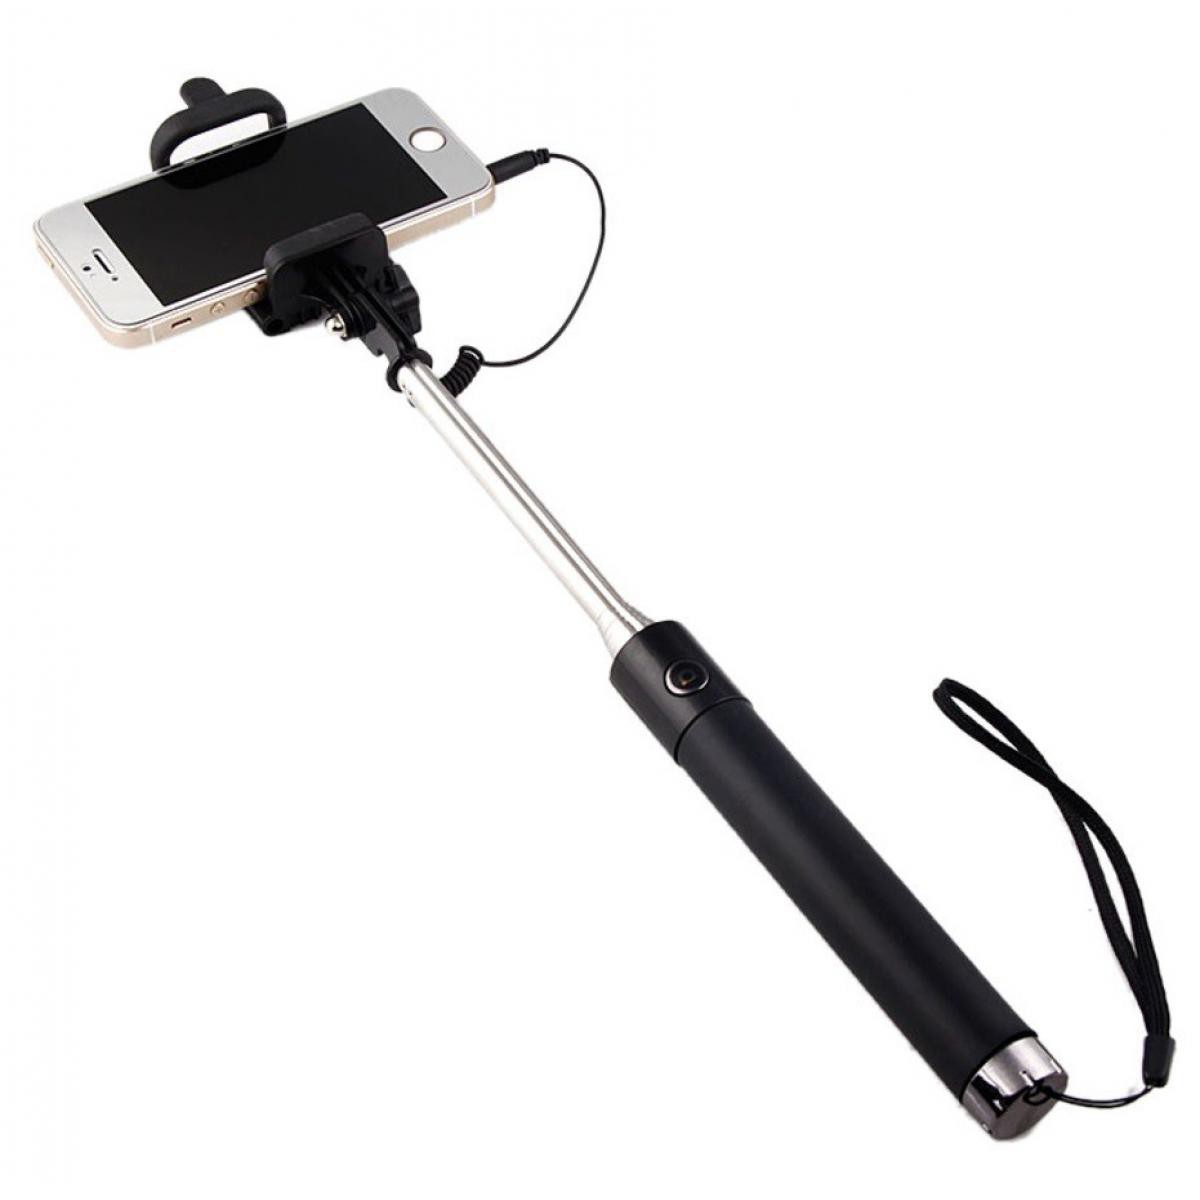 Shot - Perche Selfie Metal pour "XIAOMI Redmi 9A" Smartphone avec Cable Jack Selfie Stick Android IOS Reglable Bouton Photo (NOIR) - Autres accessoires smartphone